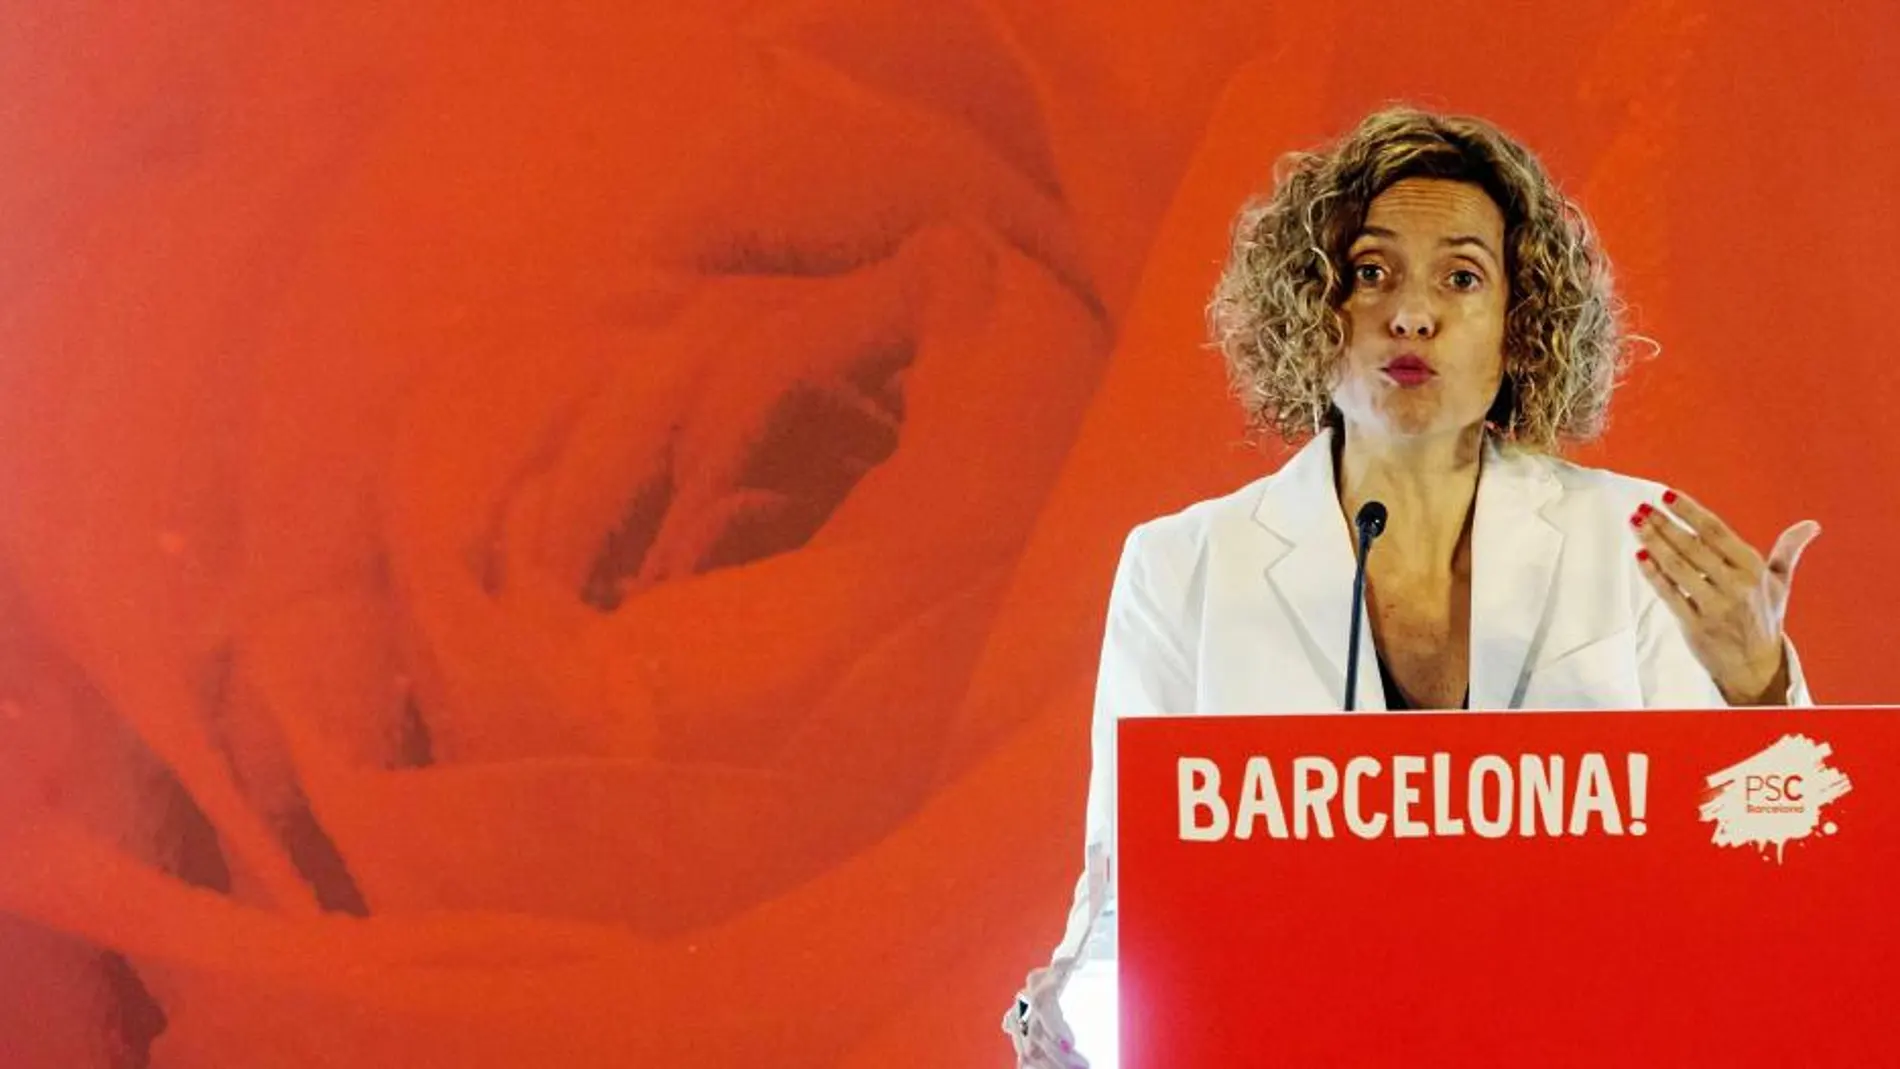 La ministra Meritxell Batet en el primer acto como miembro del Gobierno que protagonizó el sábado en la capital catalana. / QUIIQUE GARCÍA / EFE